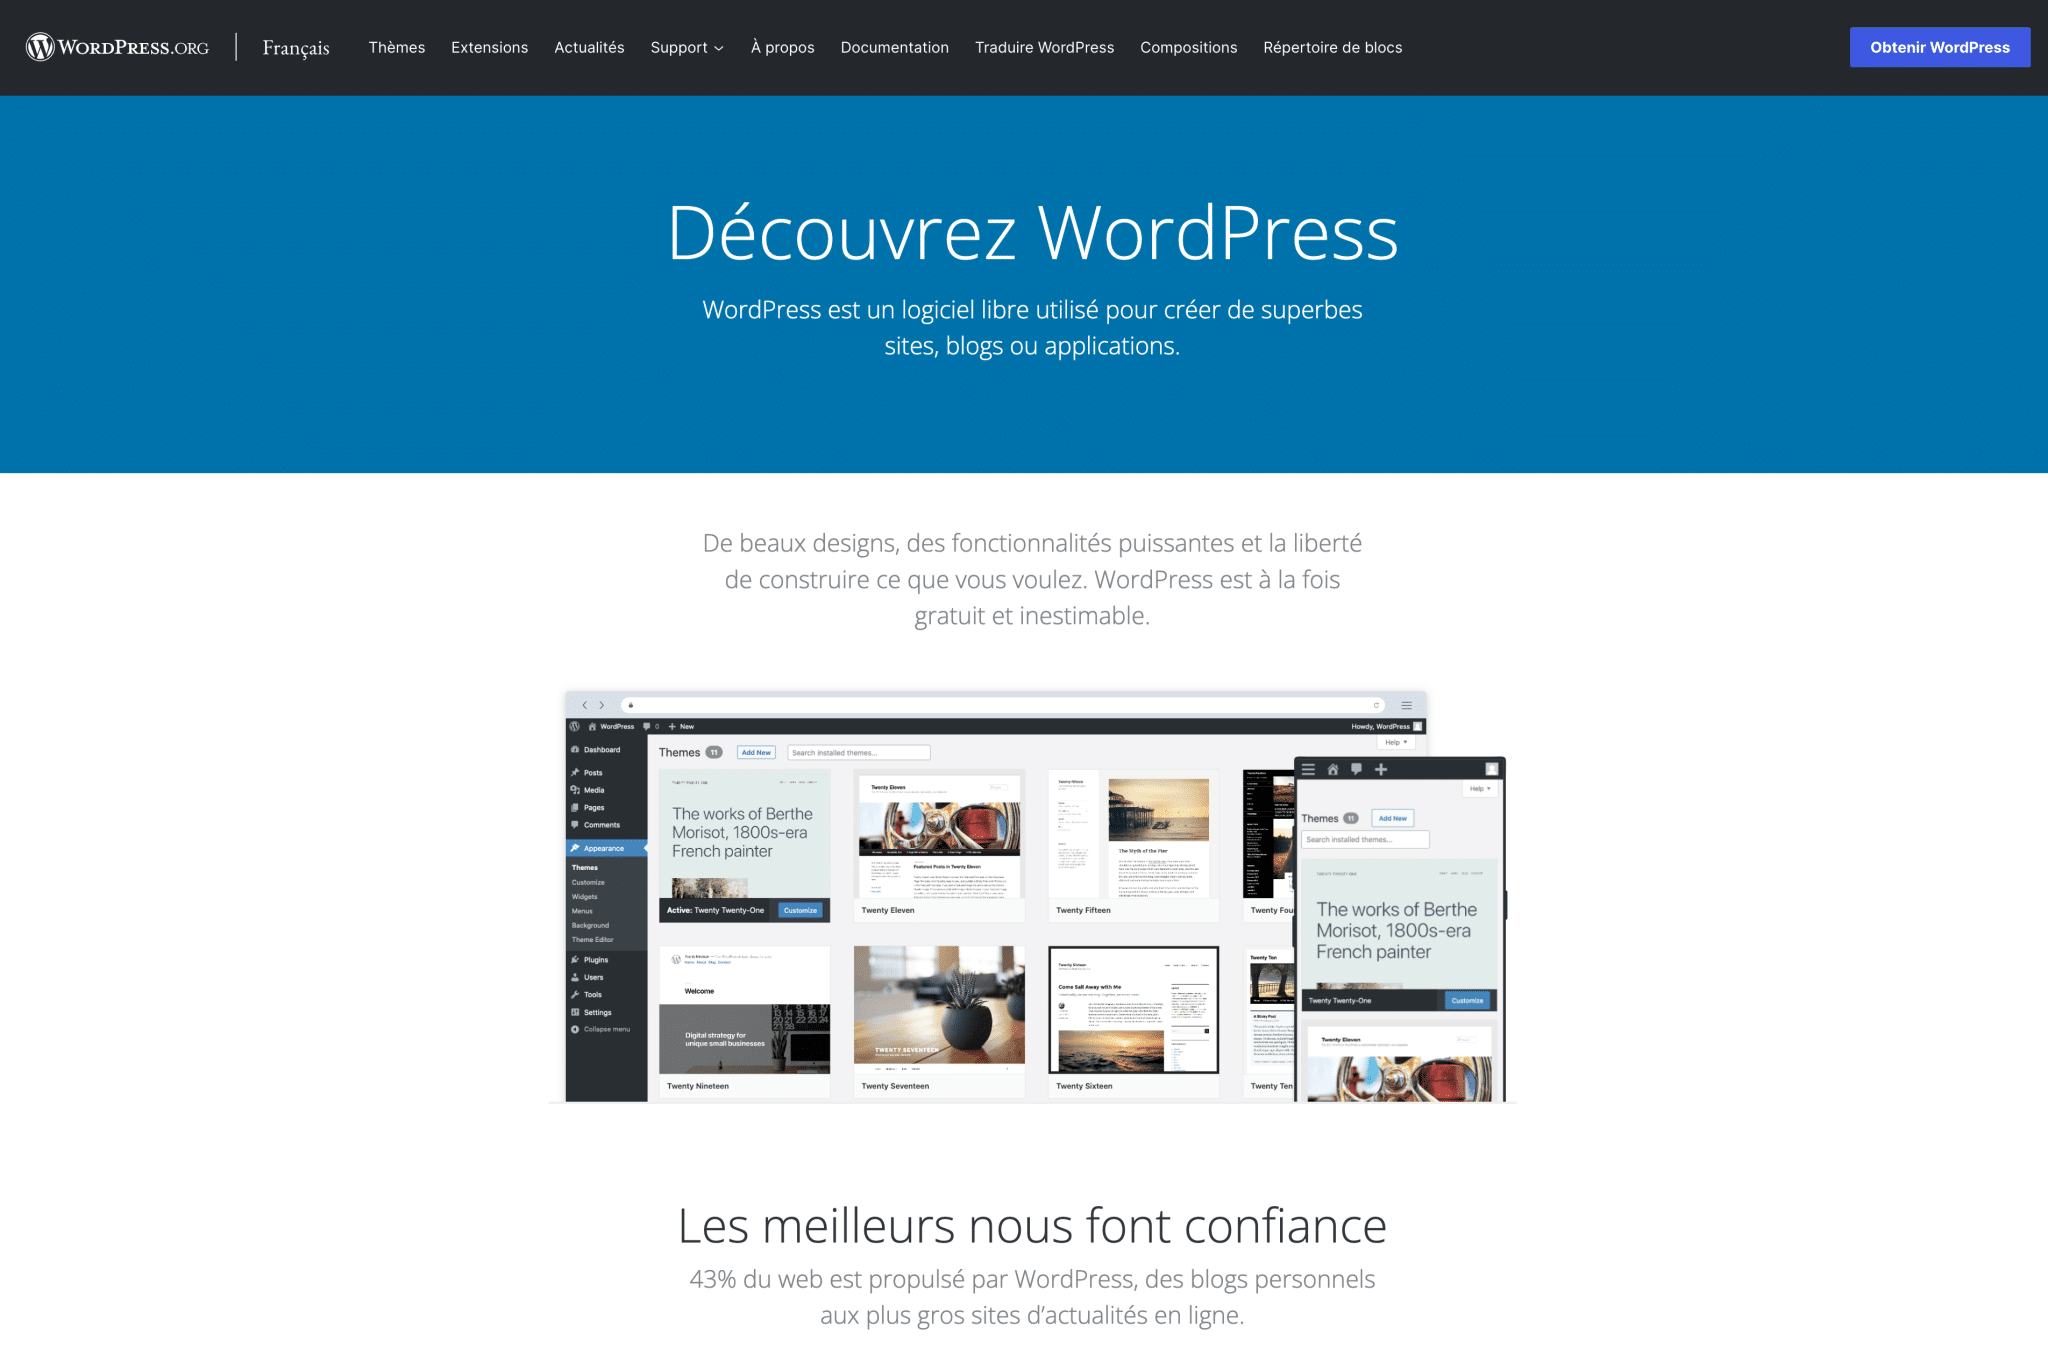 WordPress.org website homepage.